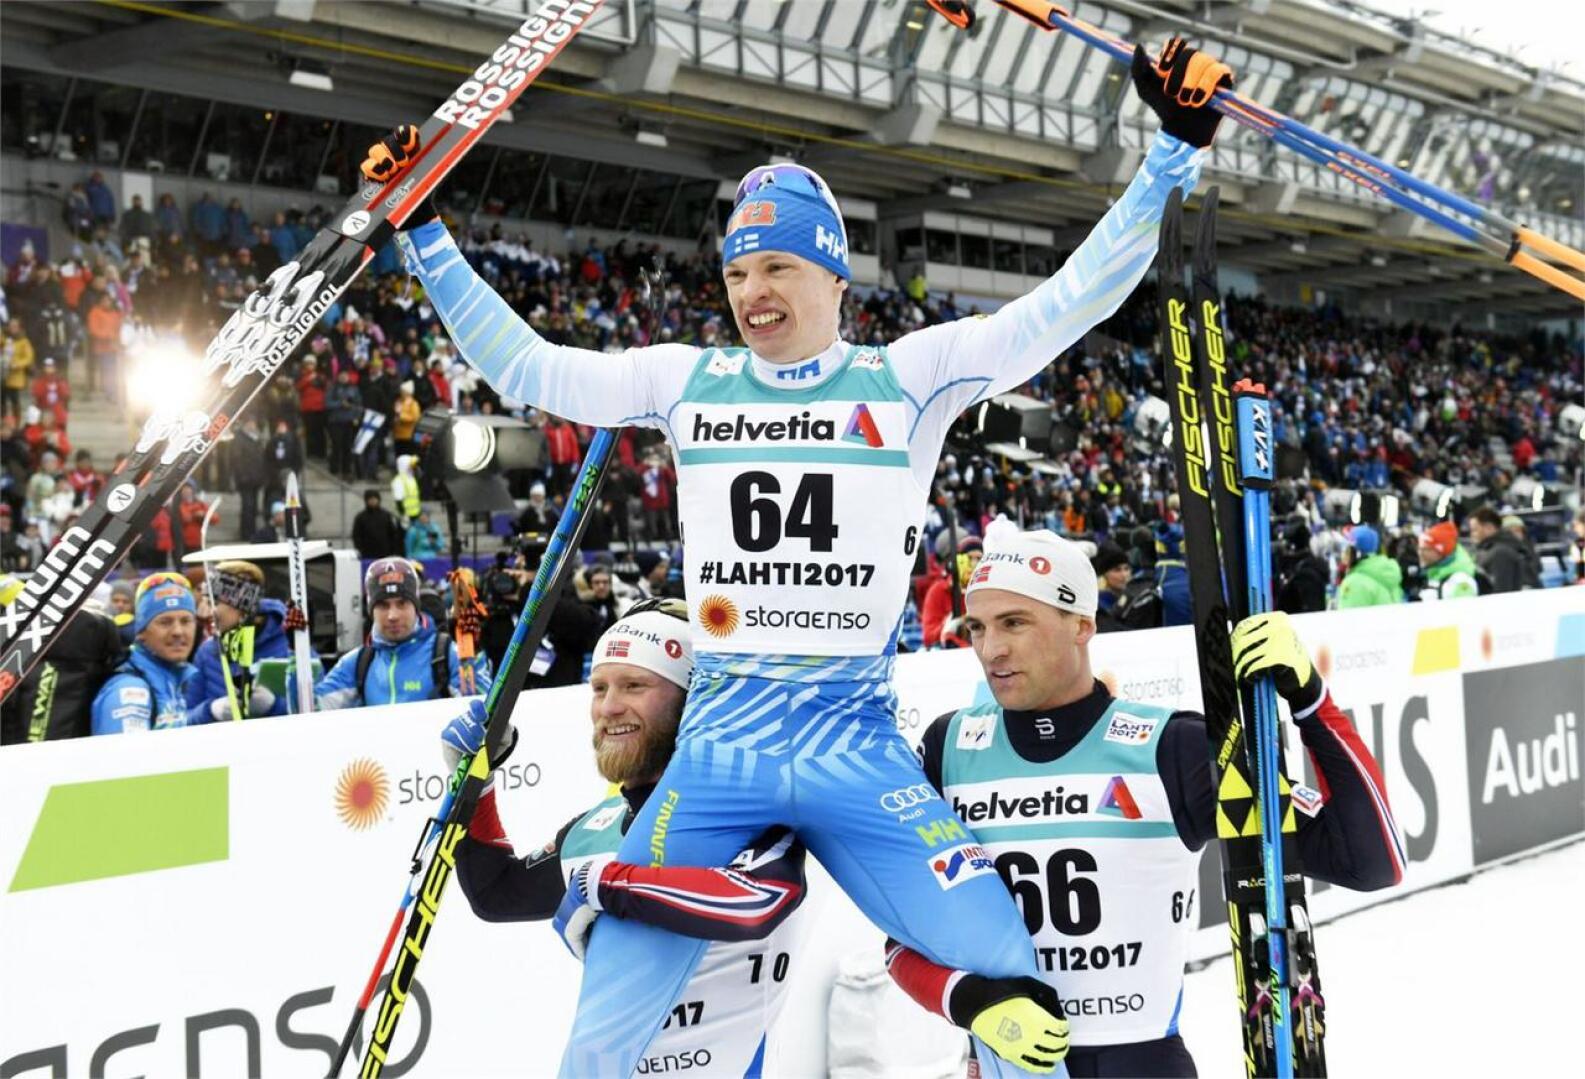 MM-kultaa hiihtänyt Iivo Niskanen pääsi kisan jälkeen norjalaishiihtäjien kultatuoliin. Niskasta kannattelevat hopealle ja pronssille yltäneet Martin Johnsrud Sundby ja Niklas Dyrhaug. LEHTIKUVA / MARTTI KAINULAINEN